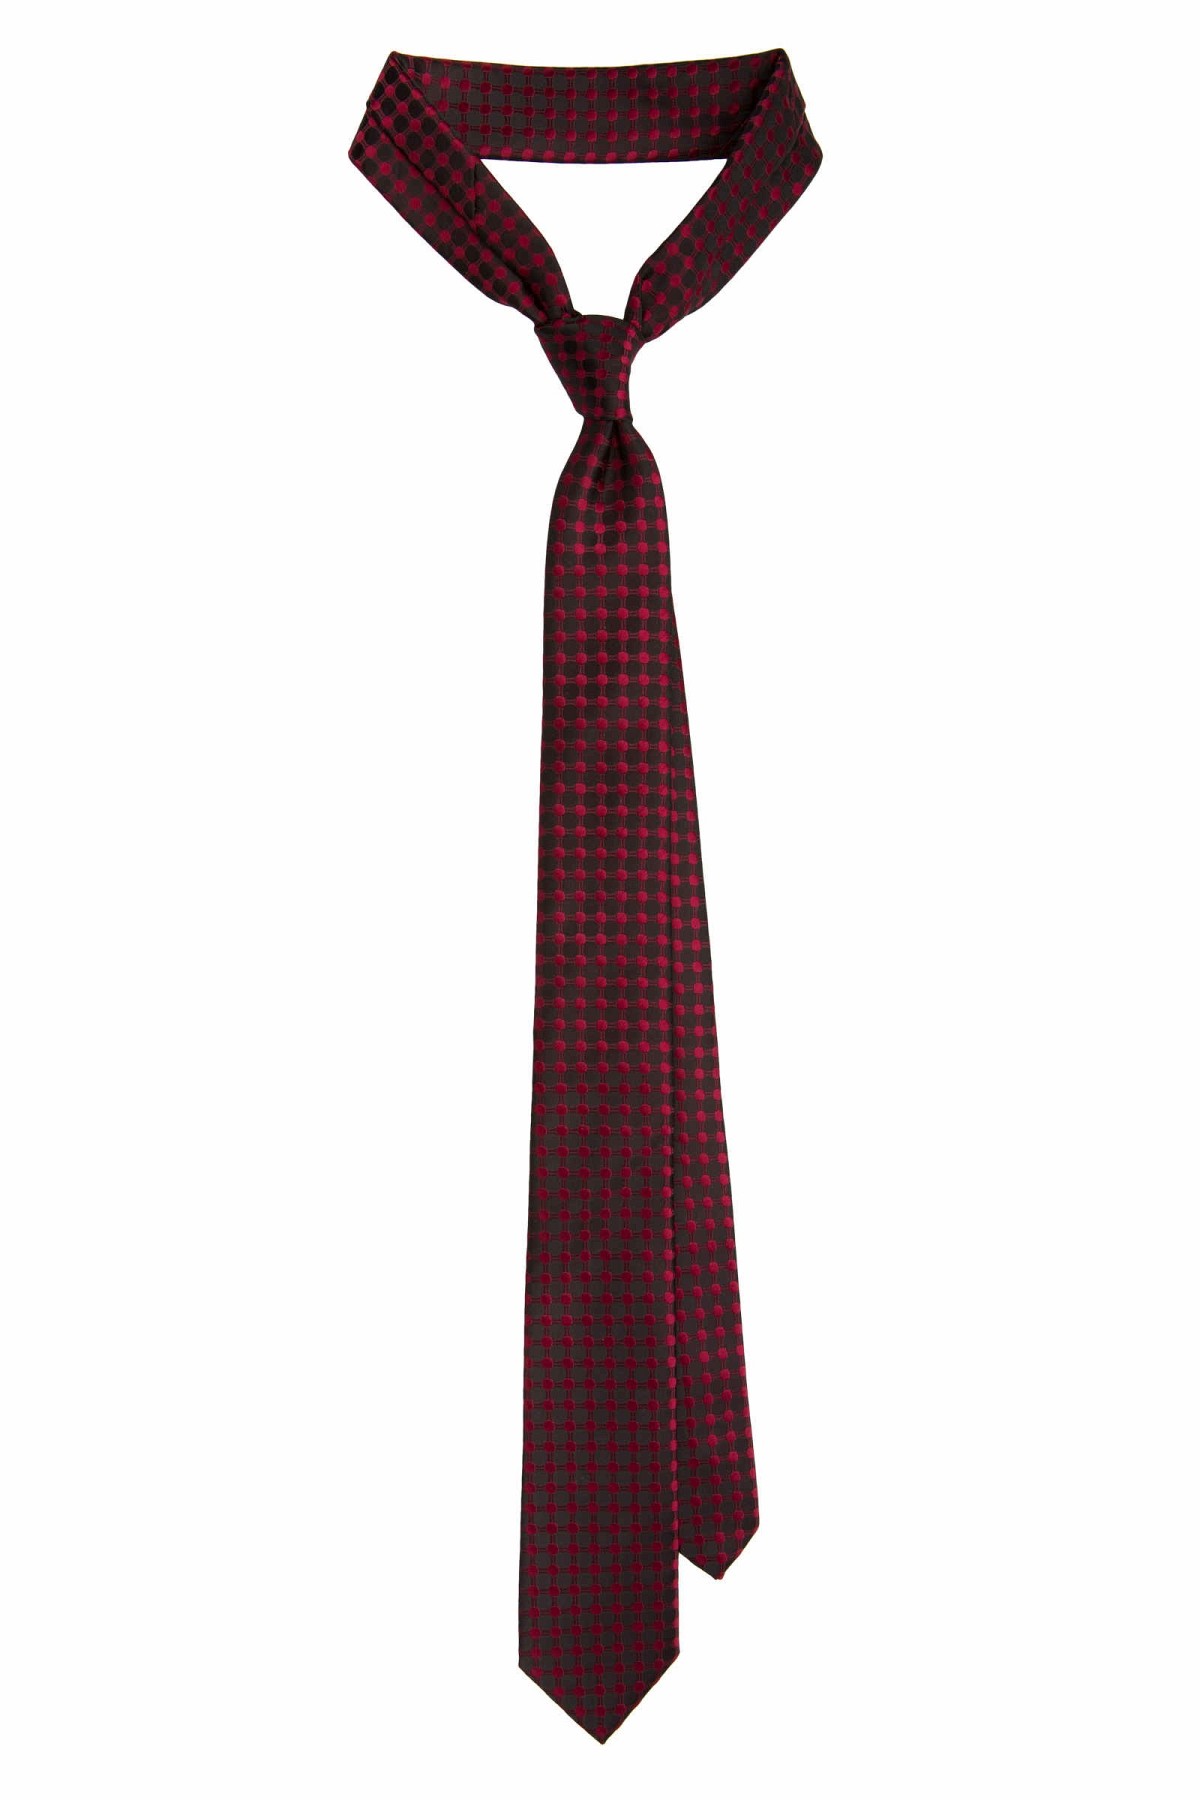 Krawat Czerwony Wzór Geometryczny